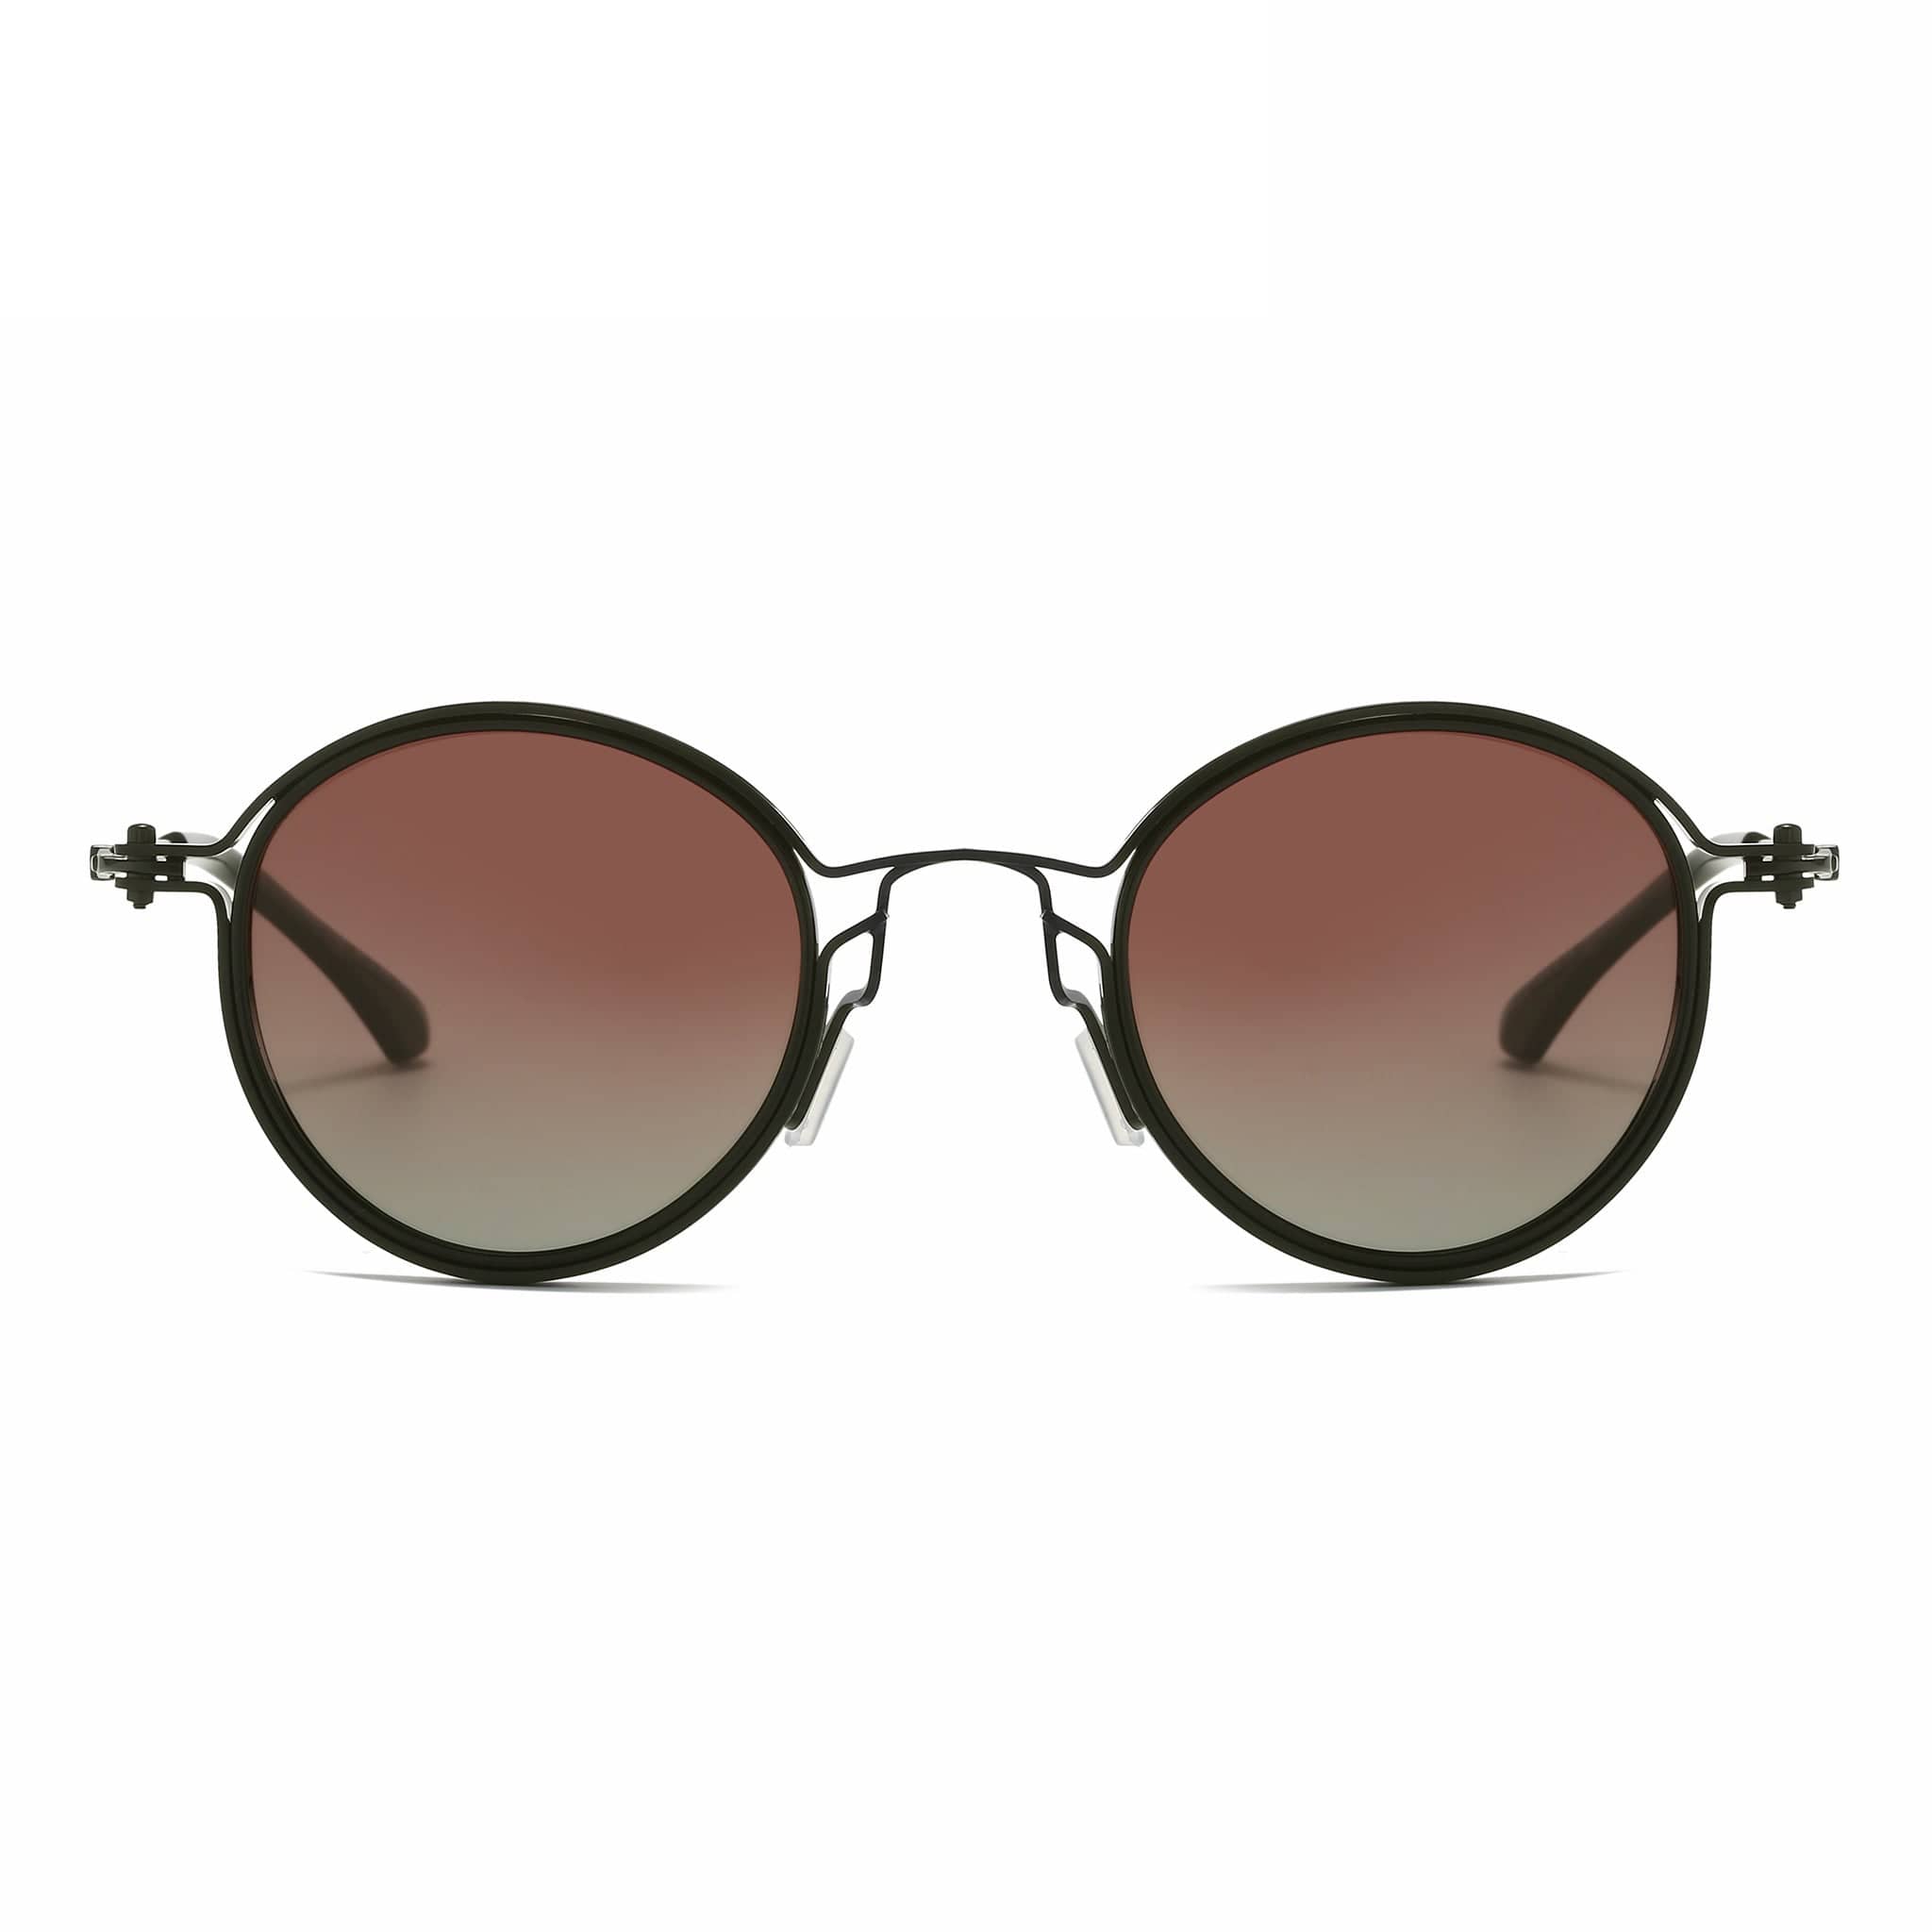 GIUSTIZIERI VECCHI Sunglasses Small / Light Gold/Brown Dolce Vita Duo